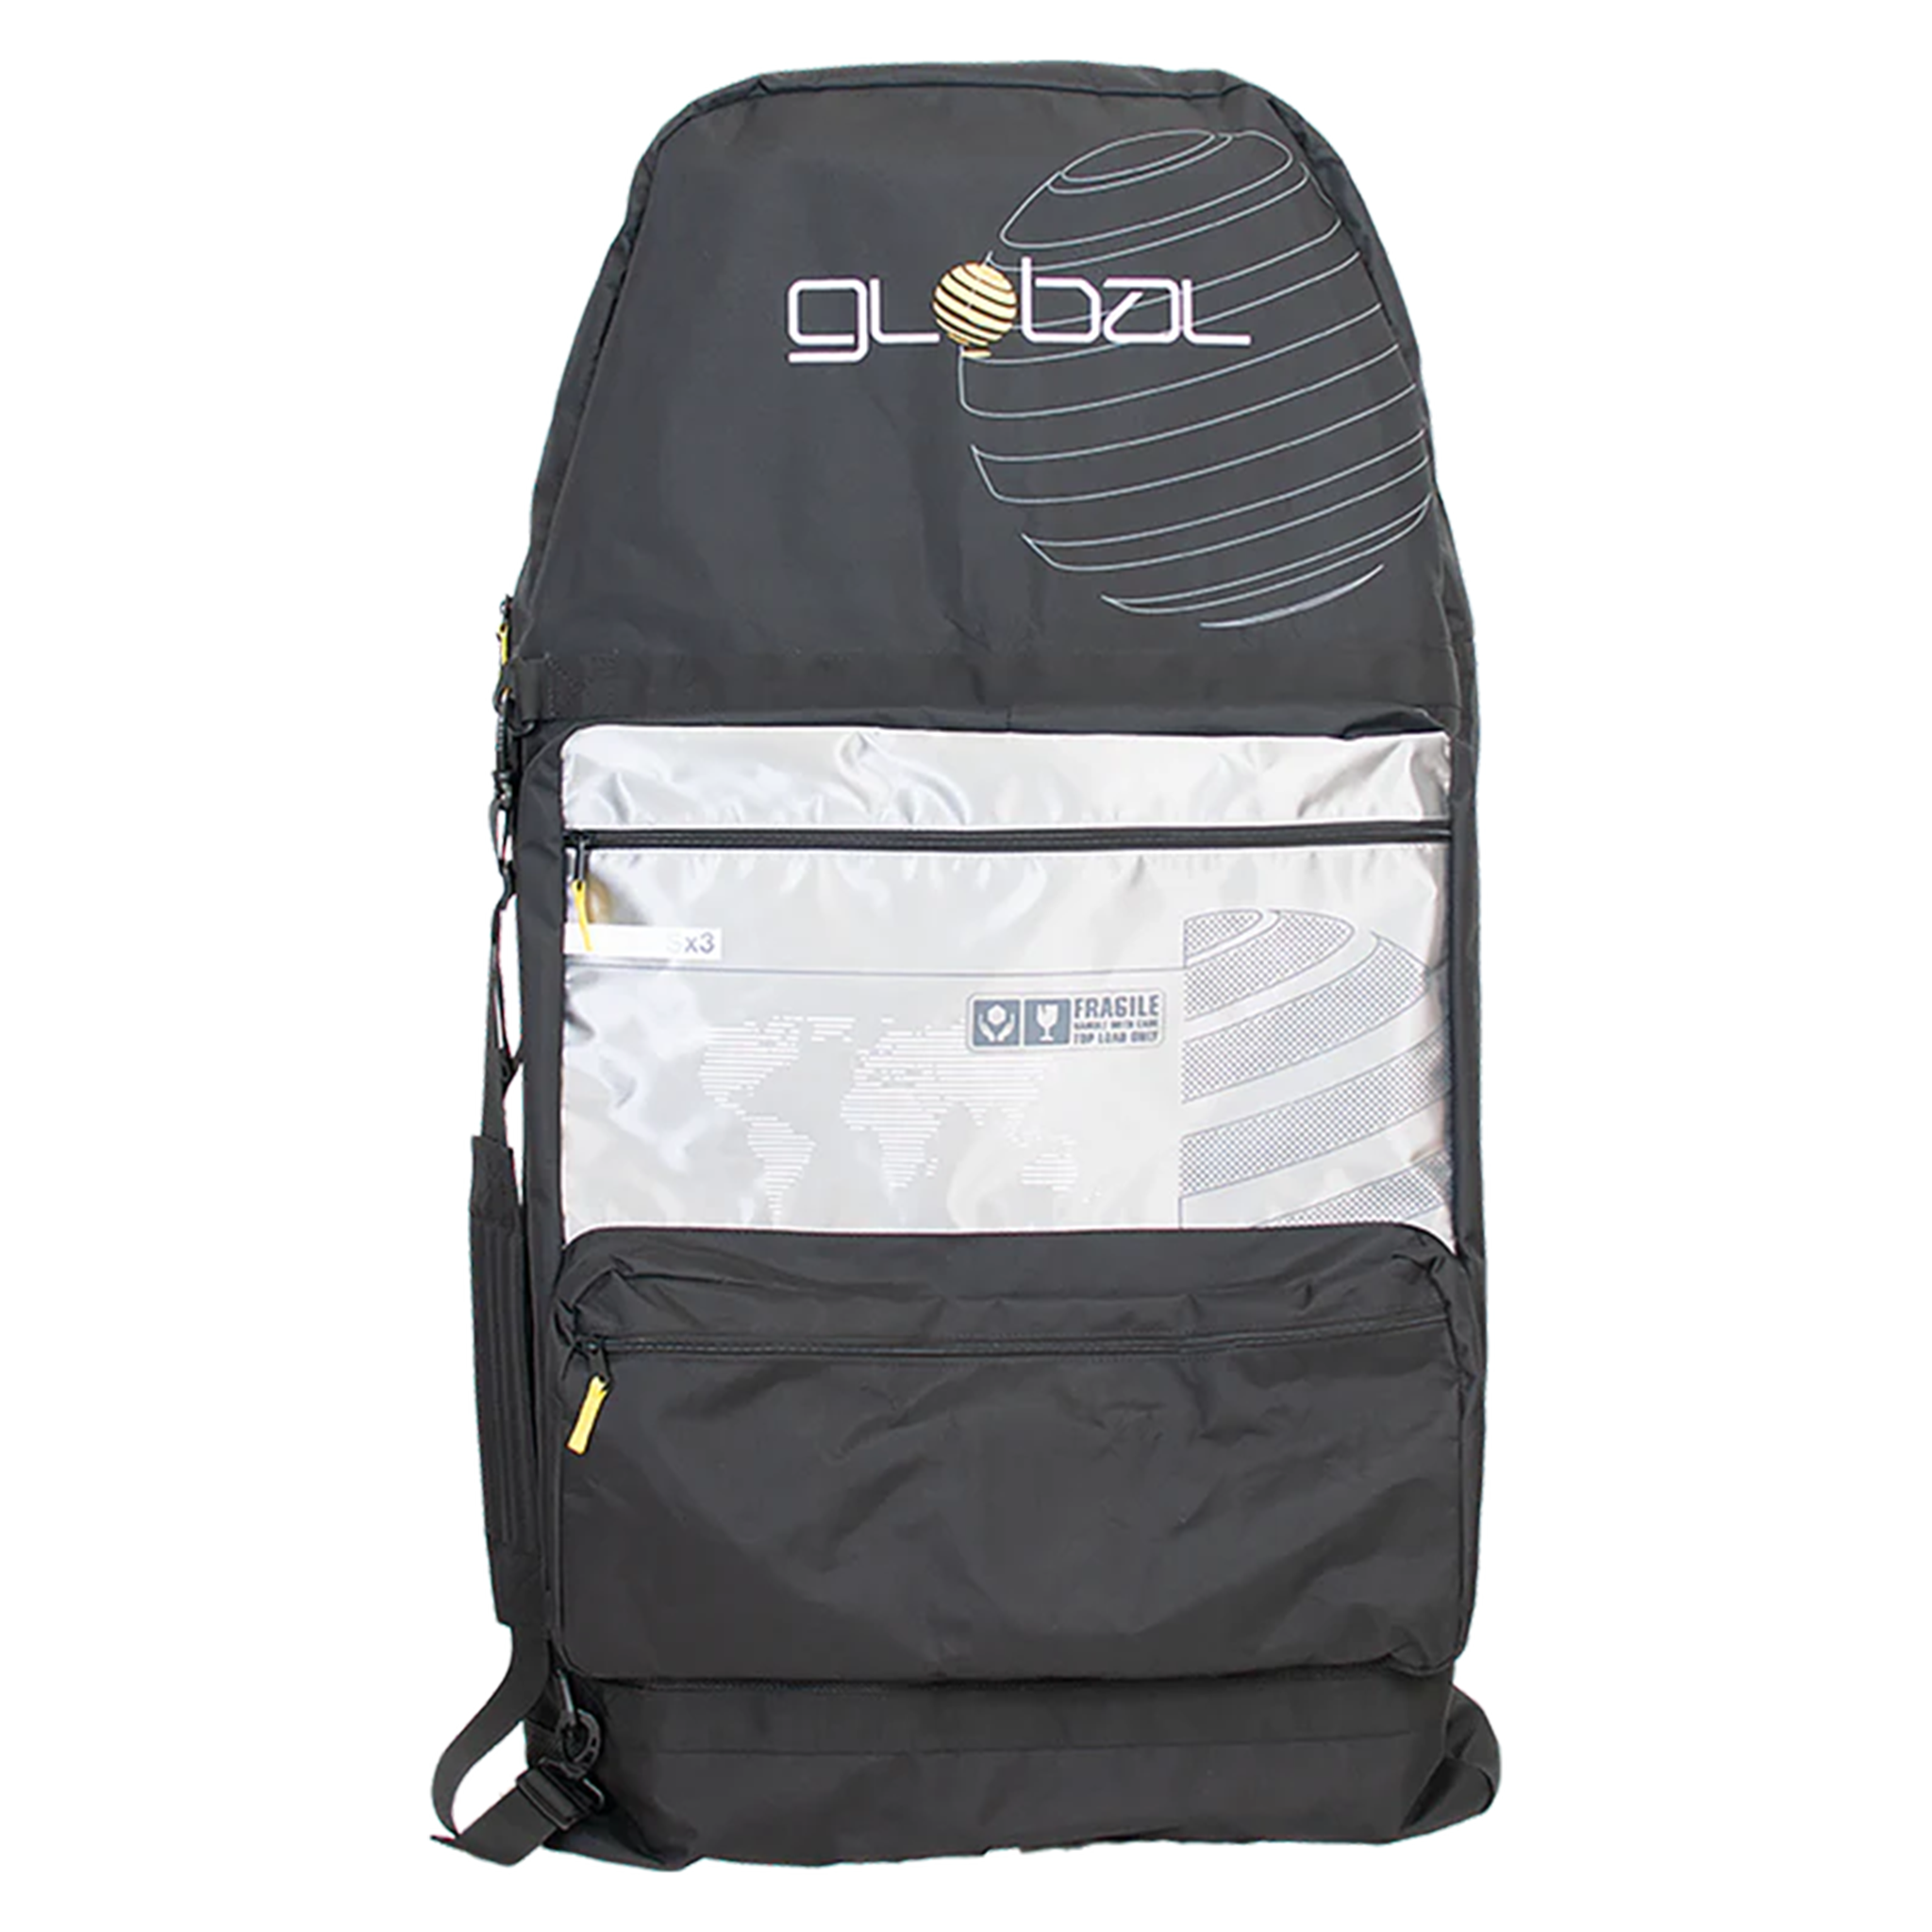 Global S3 Bodyboard Bag